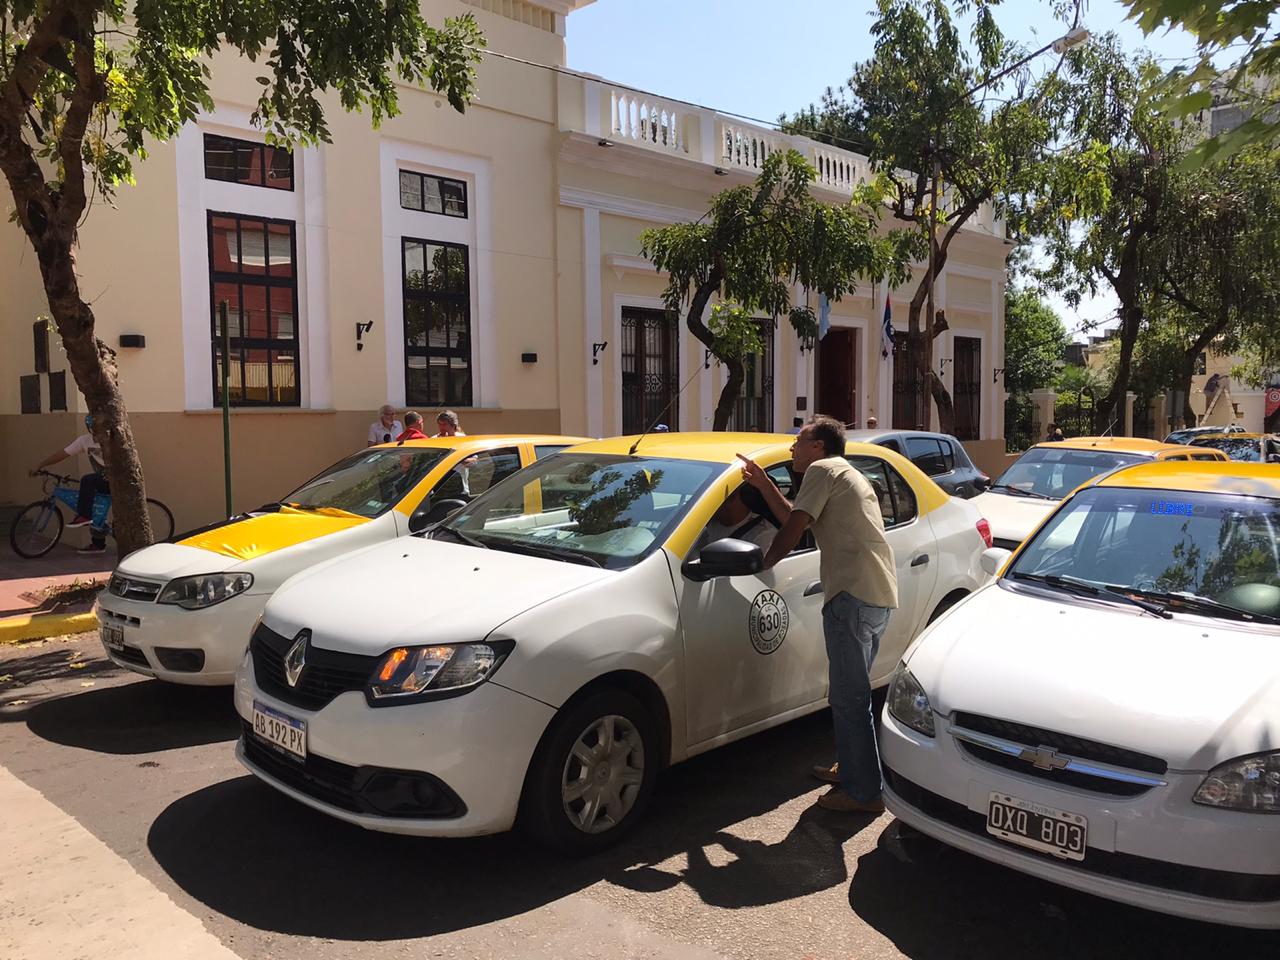 En medio de presiones, se discute el aumento de taxis en Posadas - Misiones Cuatro